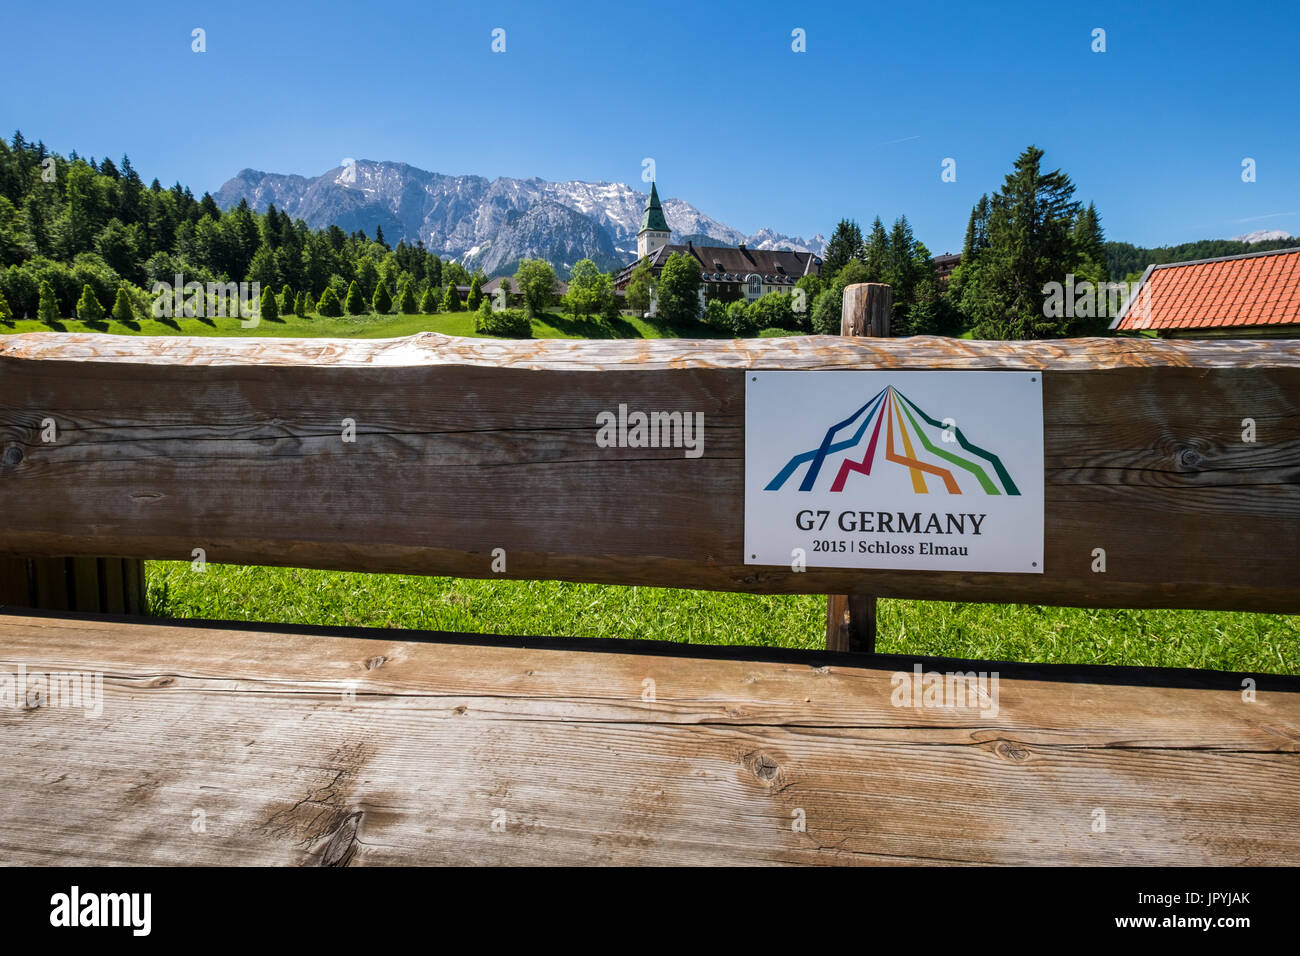 Hotel Schloss Elmau,signo en banco de madera observando la escena de la cumbre del G7 en 2015, Baviera, Alemania Foto de stock